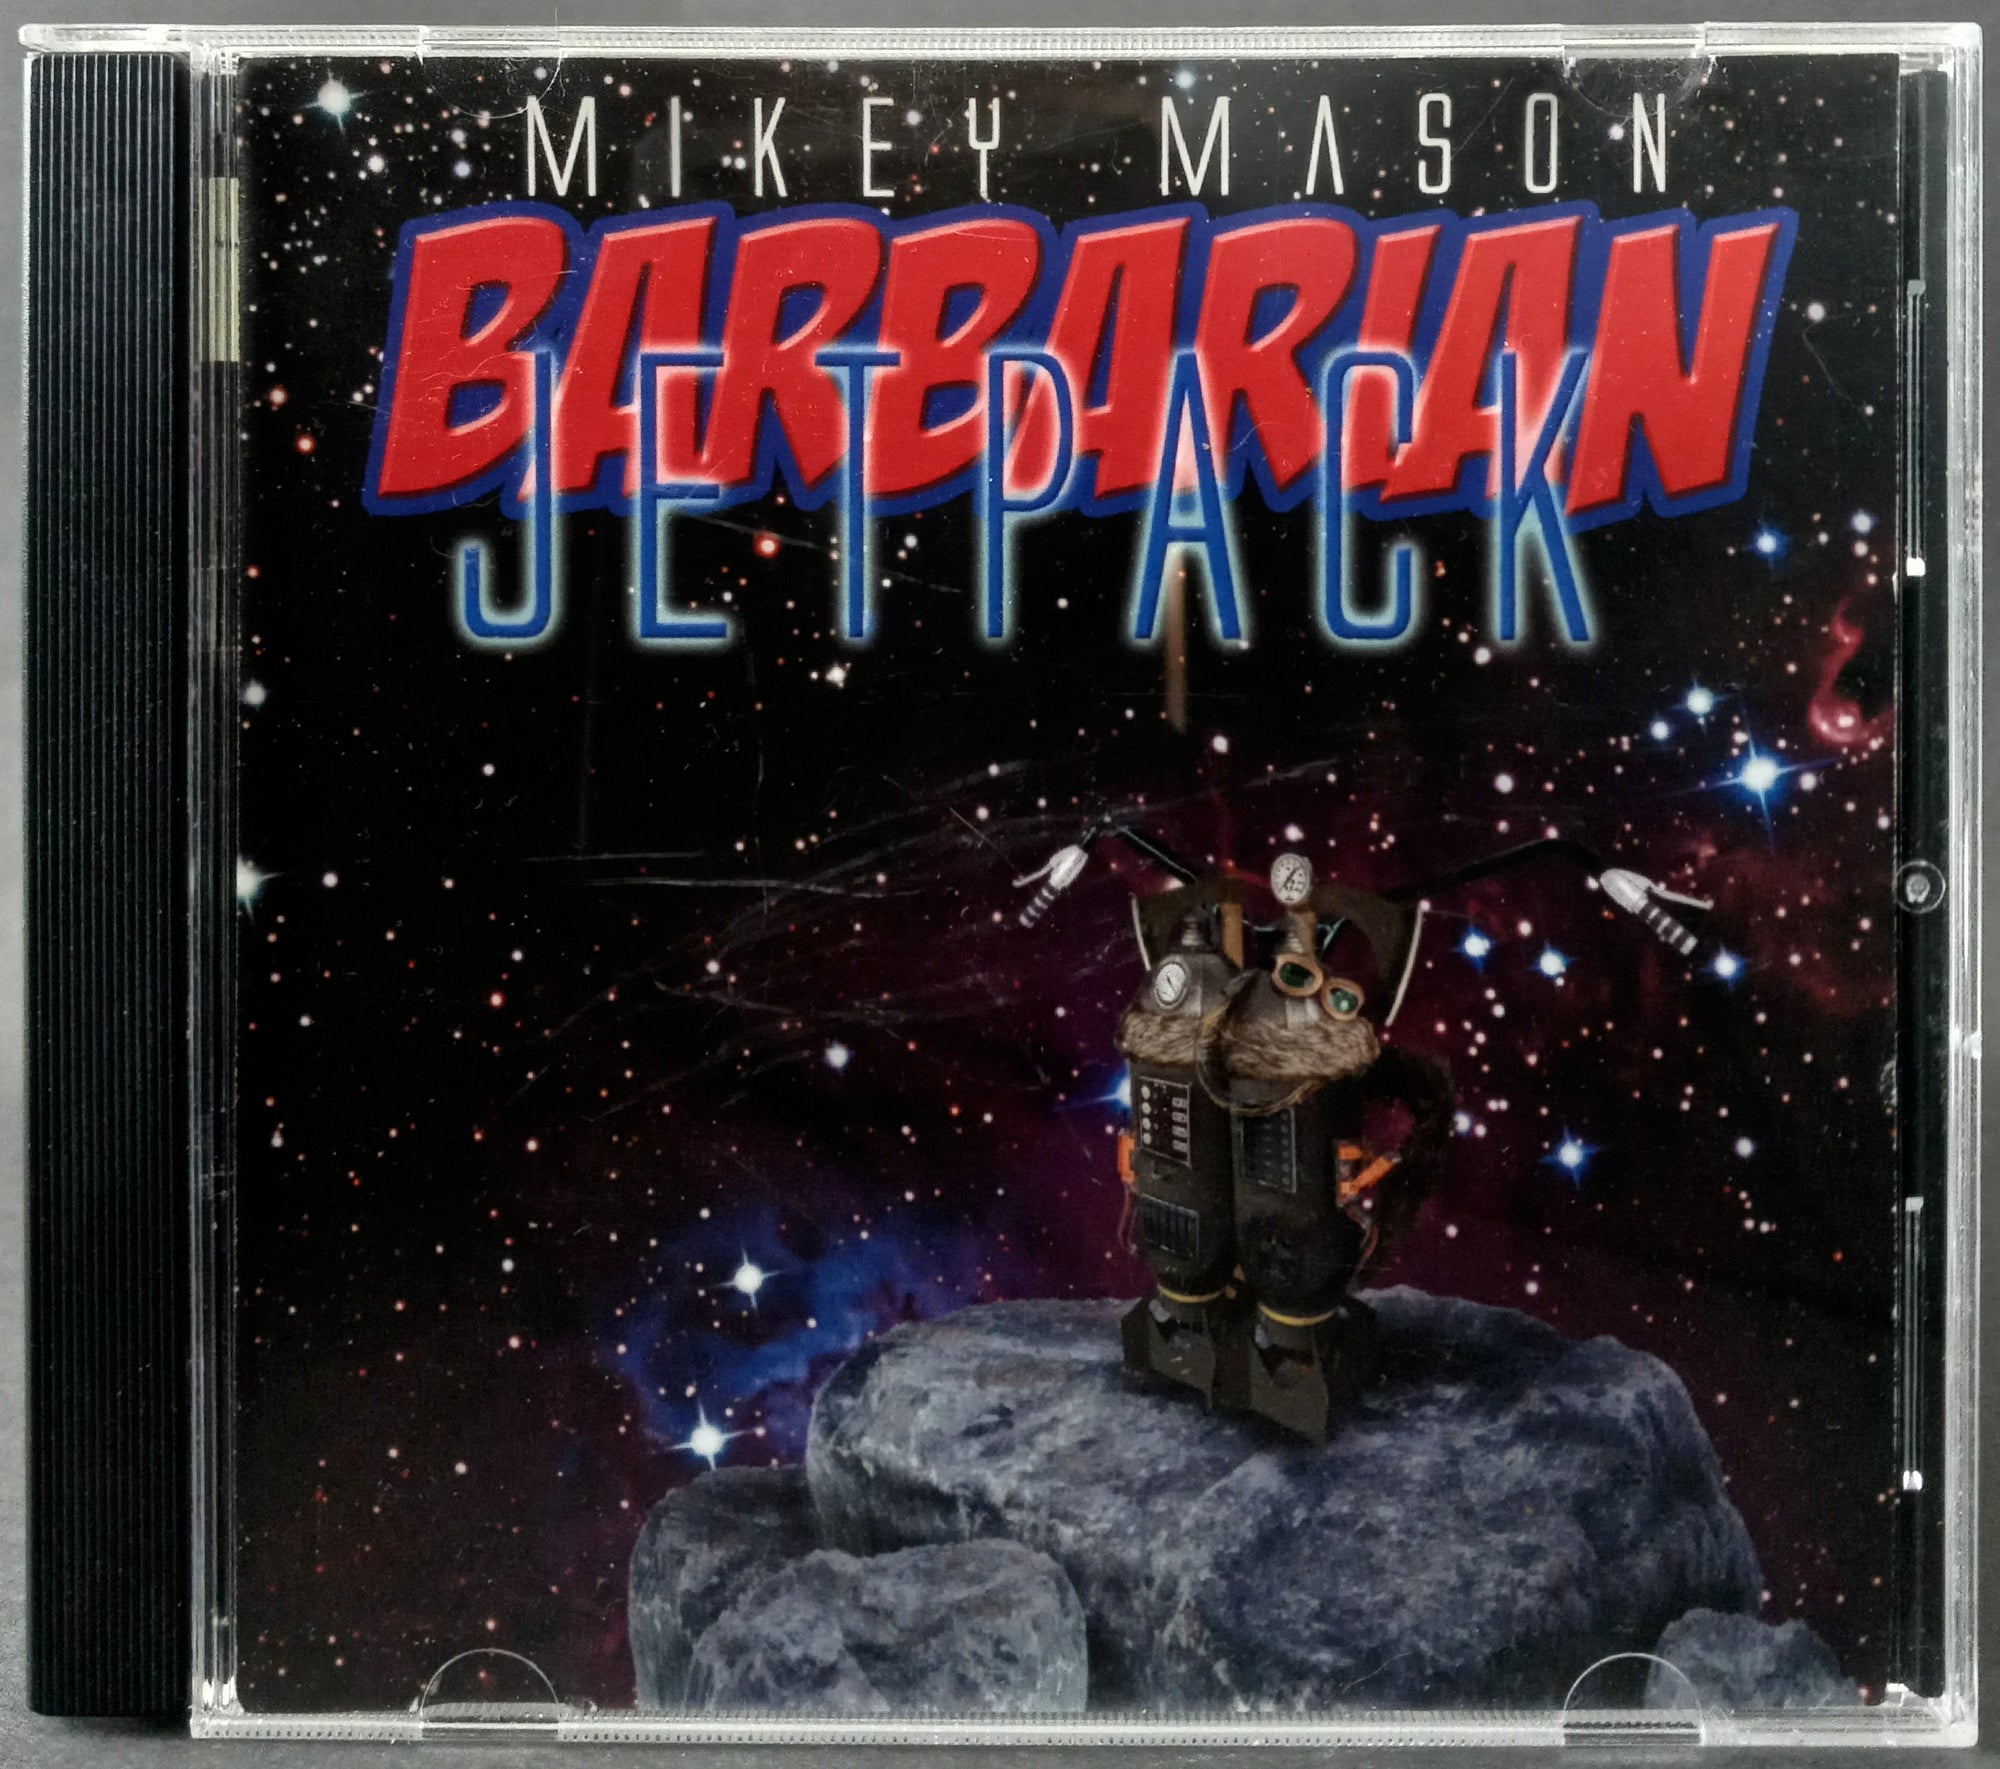 Mikey-Mason-Barbarian-Jetpack-CD